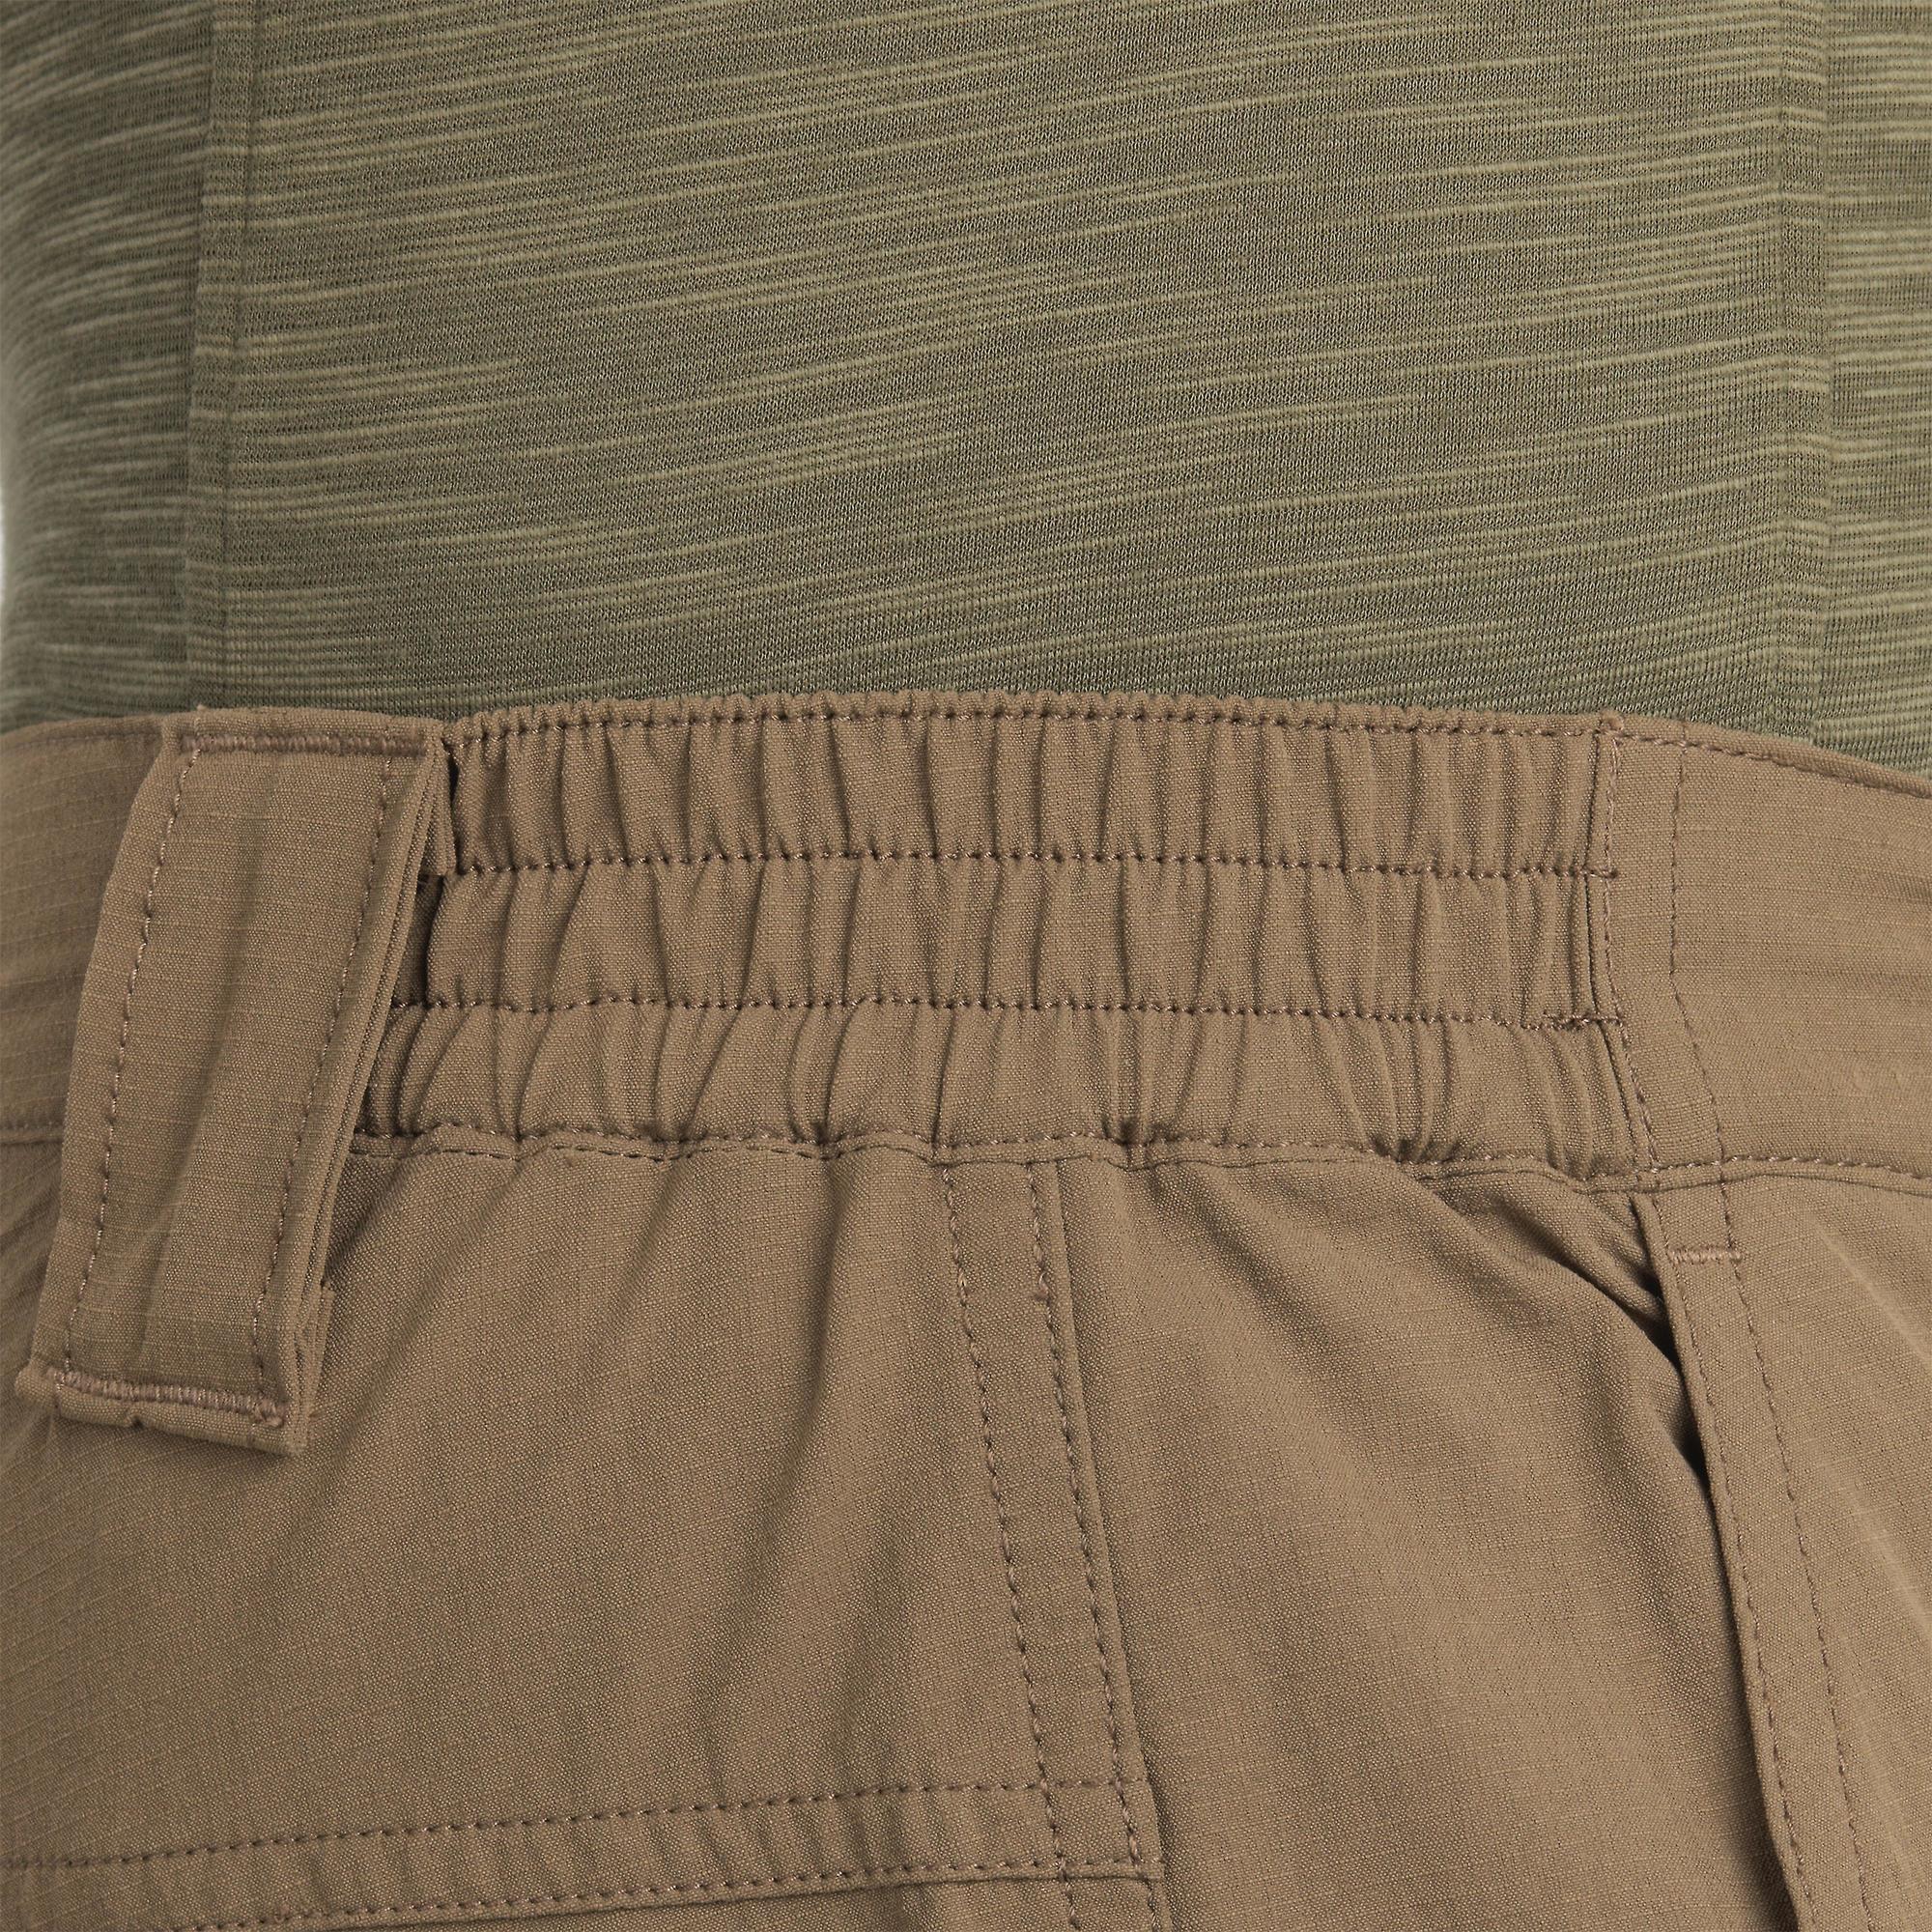 Men Pants Clothes Work Breathable Casual Pants Cotton Linen Light Trousers  | eBay